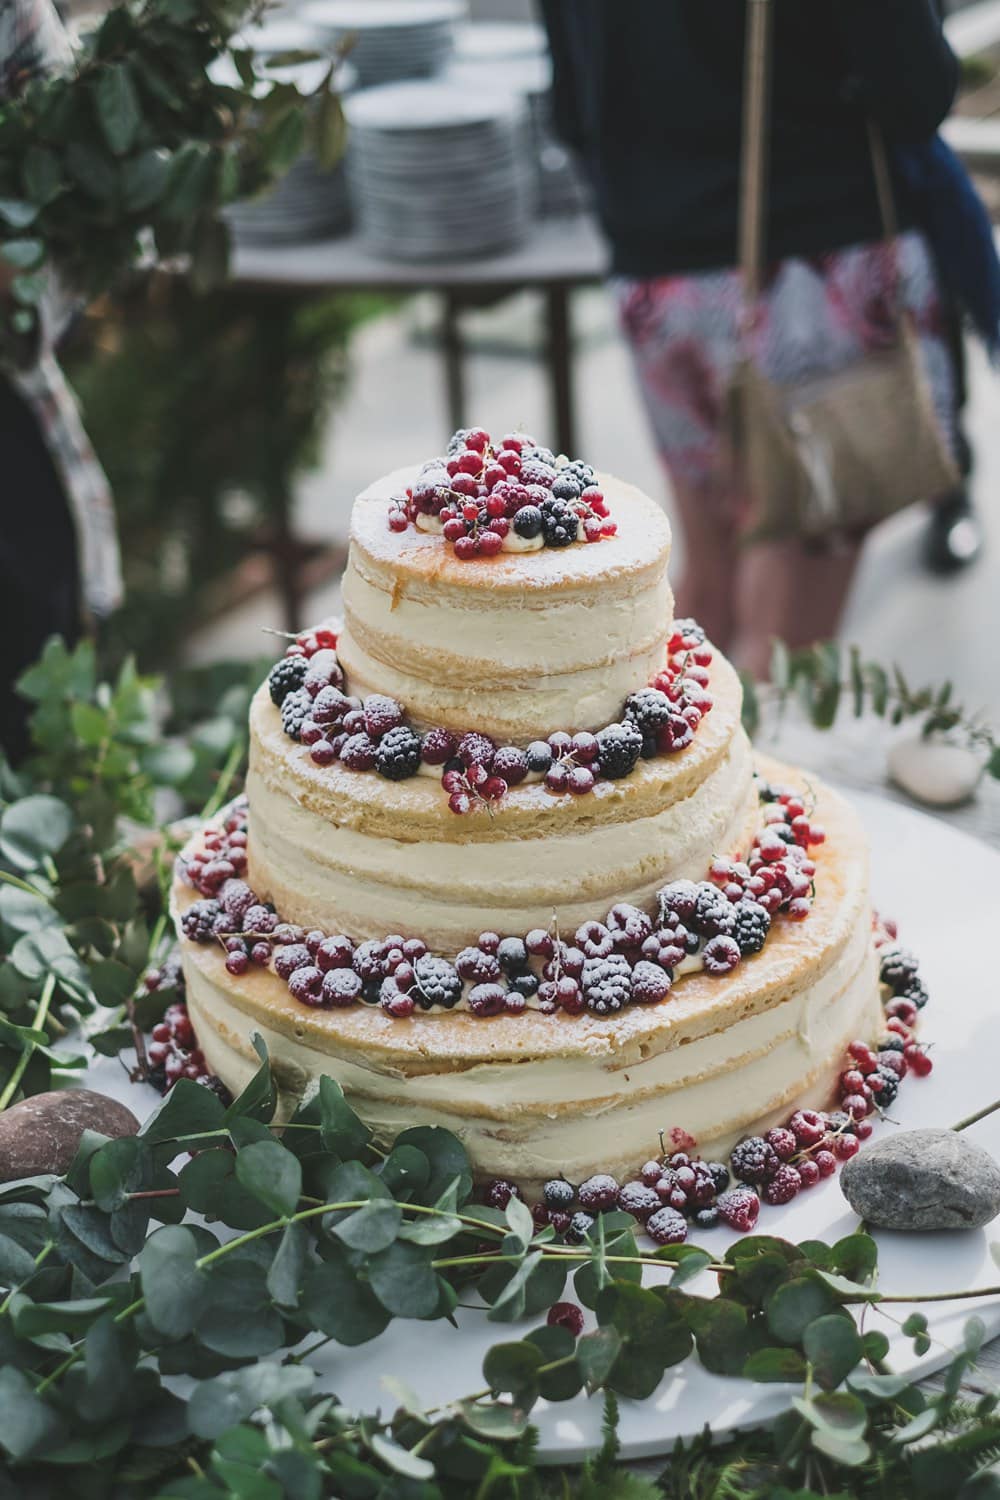 cake design Areias do seixo greenhouse wedding #cake #Areiasdoseixo #greenhousewedding #Areiasdoseixowedding #santacruz #noahsurf #noahsurfhouse #greenhousephotographer #lisbonphotographer #lisbonwedding #lisbonvenue